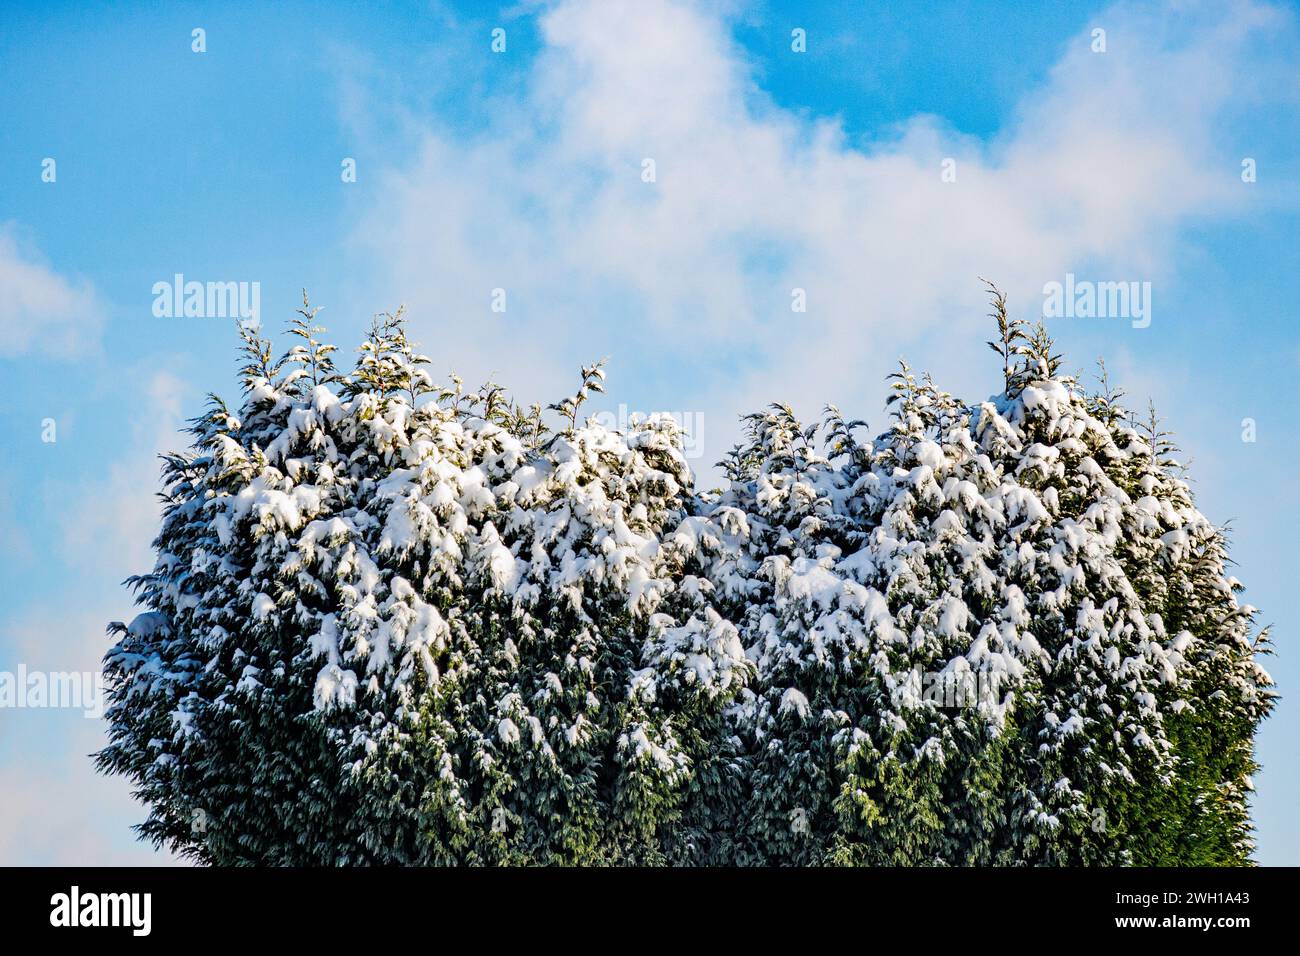 Resti di neve sulla cima di un albero con fogliame verde contro il cielo blu sullo sfondo, dopo forti nevicate, soleggiato giorno d'inverno Foto Stock